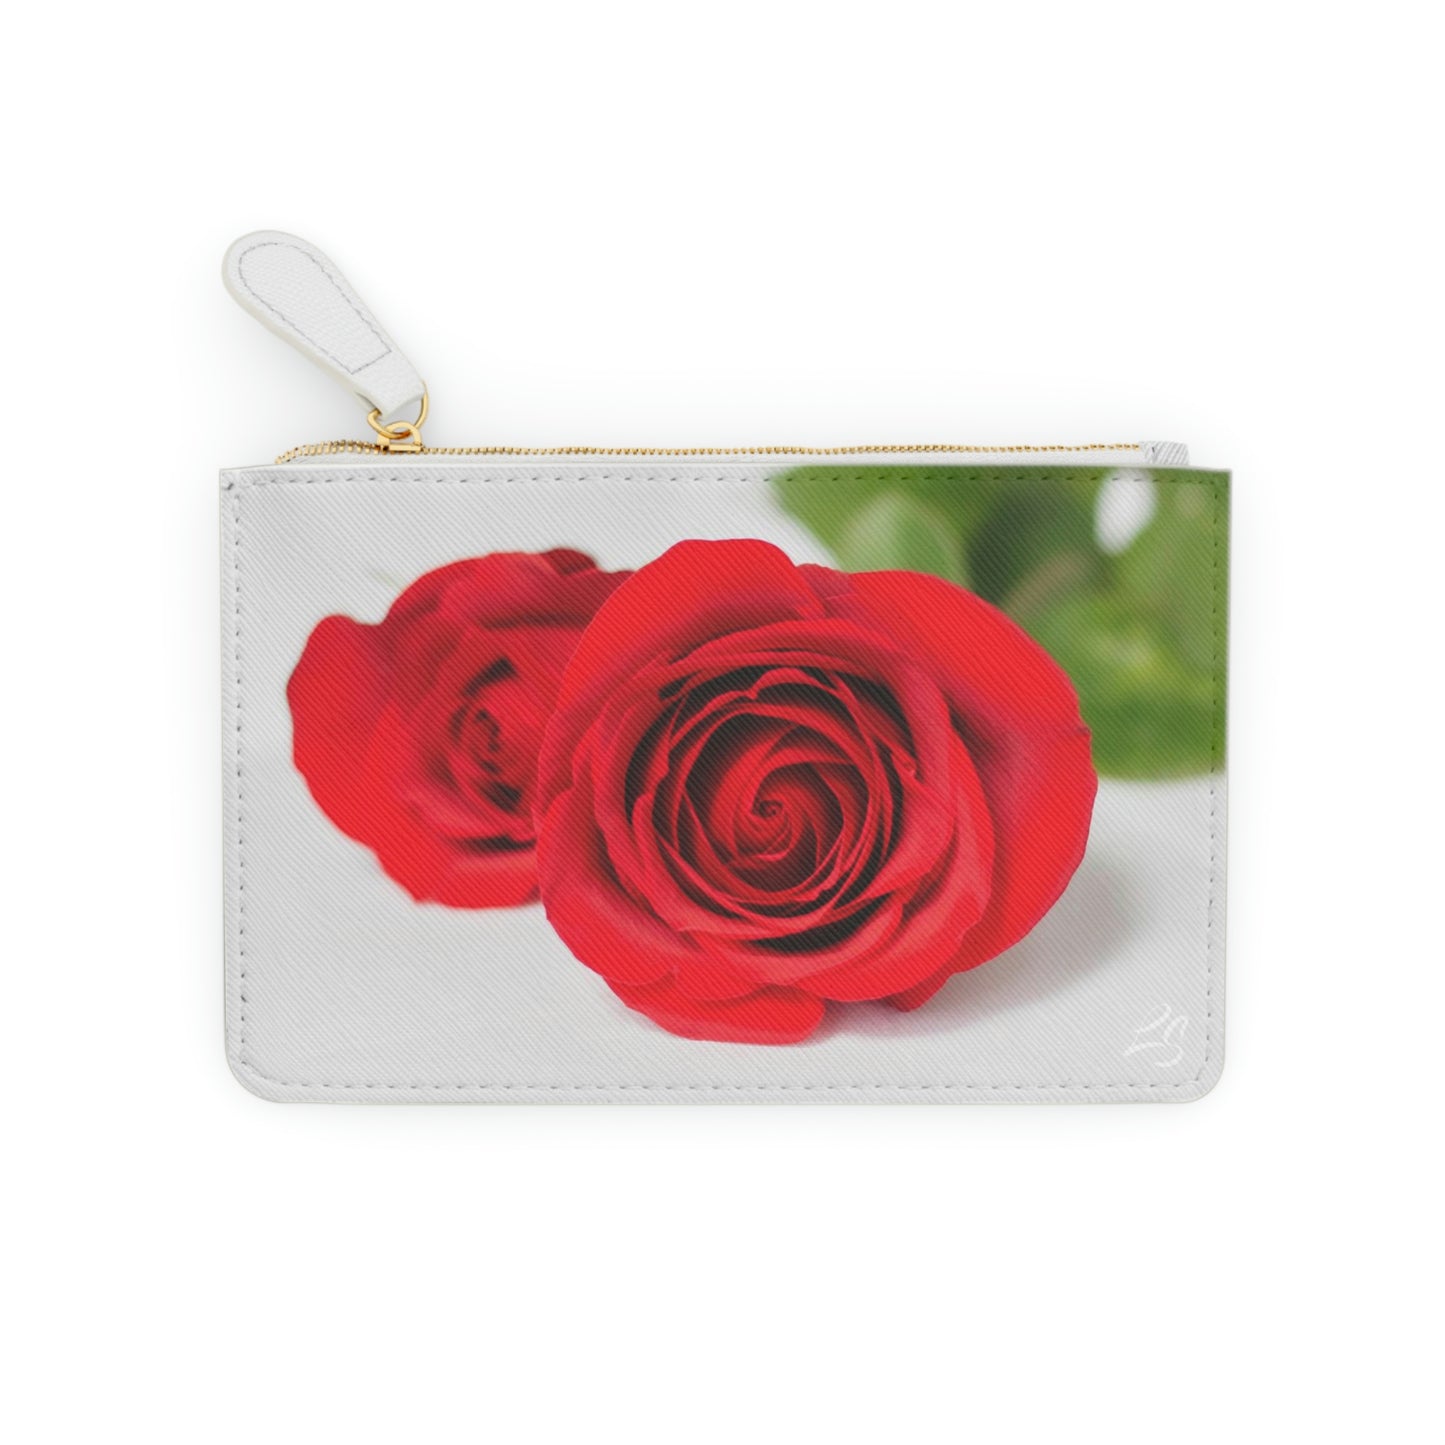 Red Rose MINI Clutch Bag